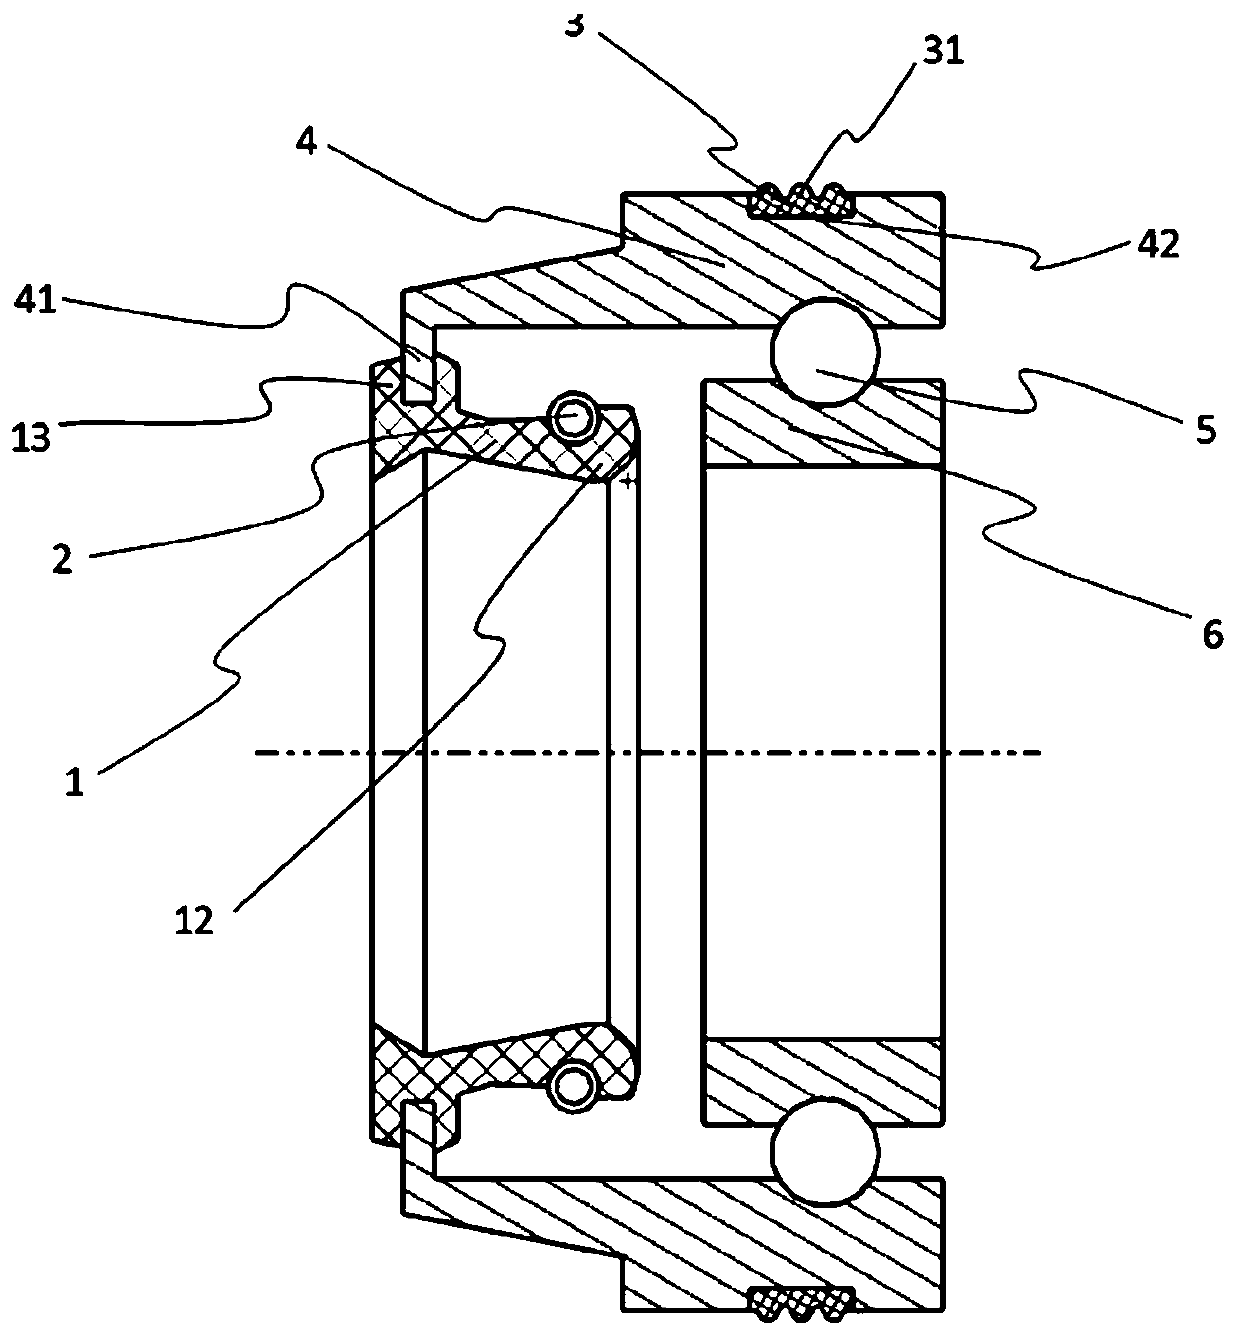 Integrated sealing type bearing device